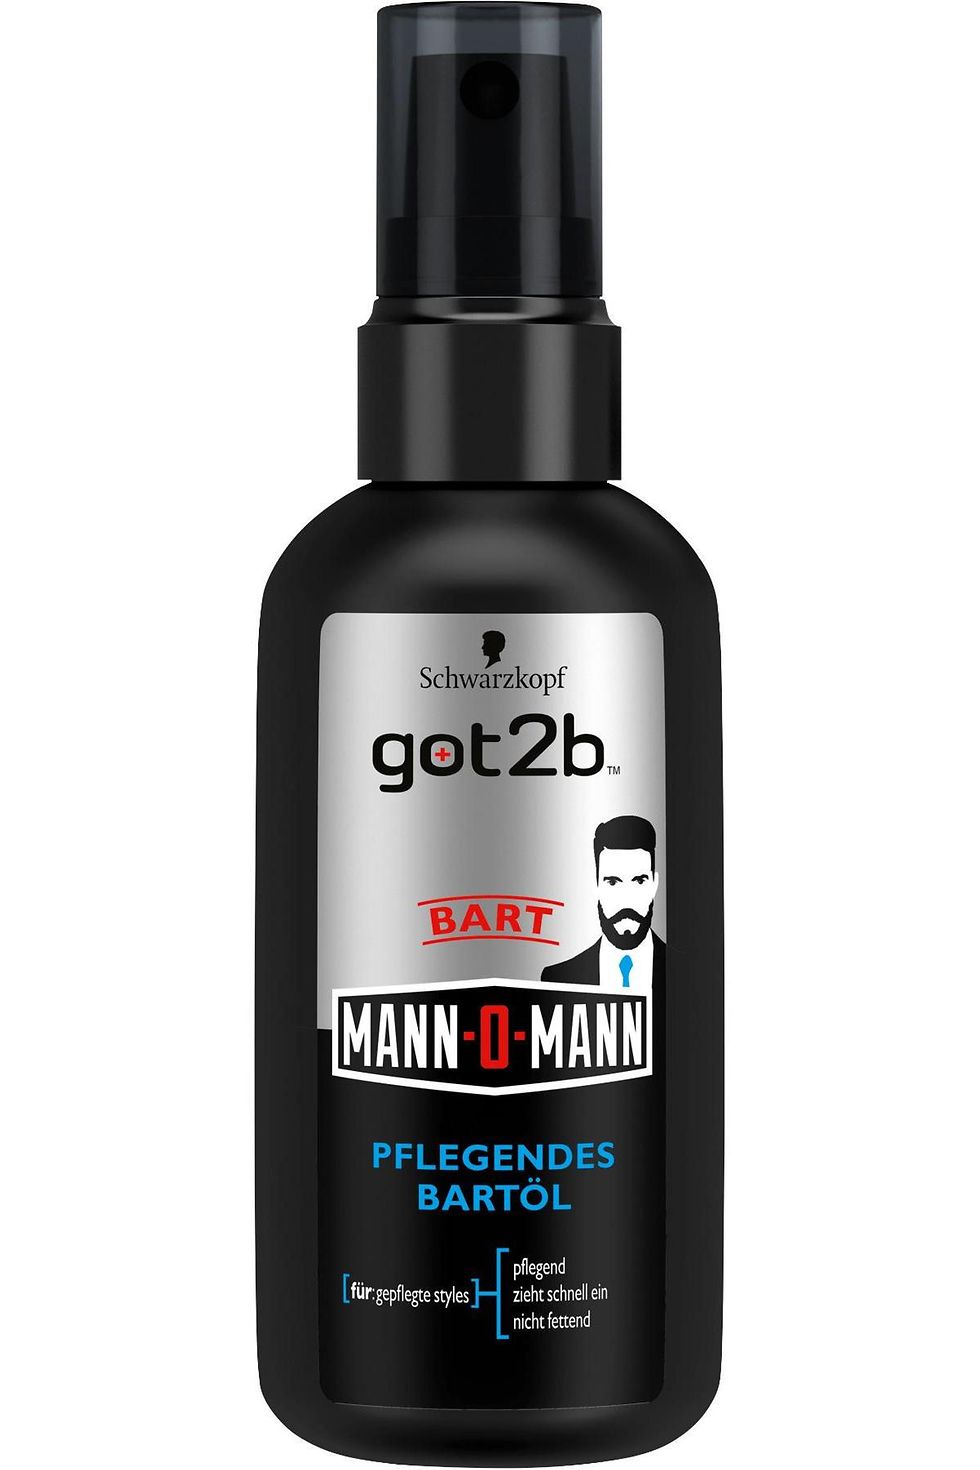 got2b Mann-o-Mann Pflegendes Bartöl